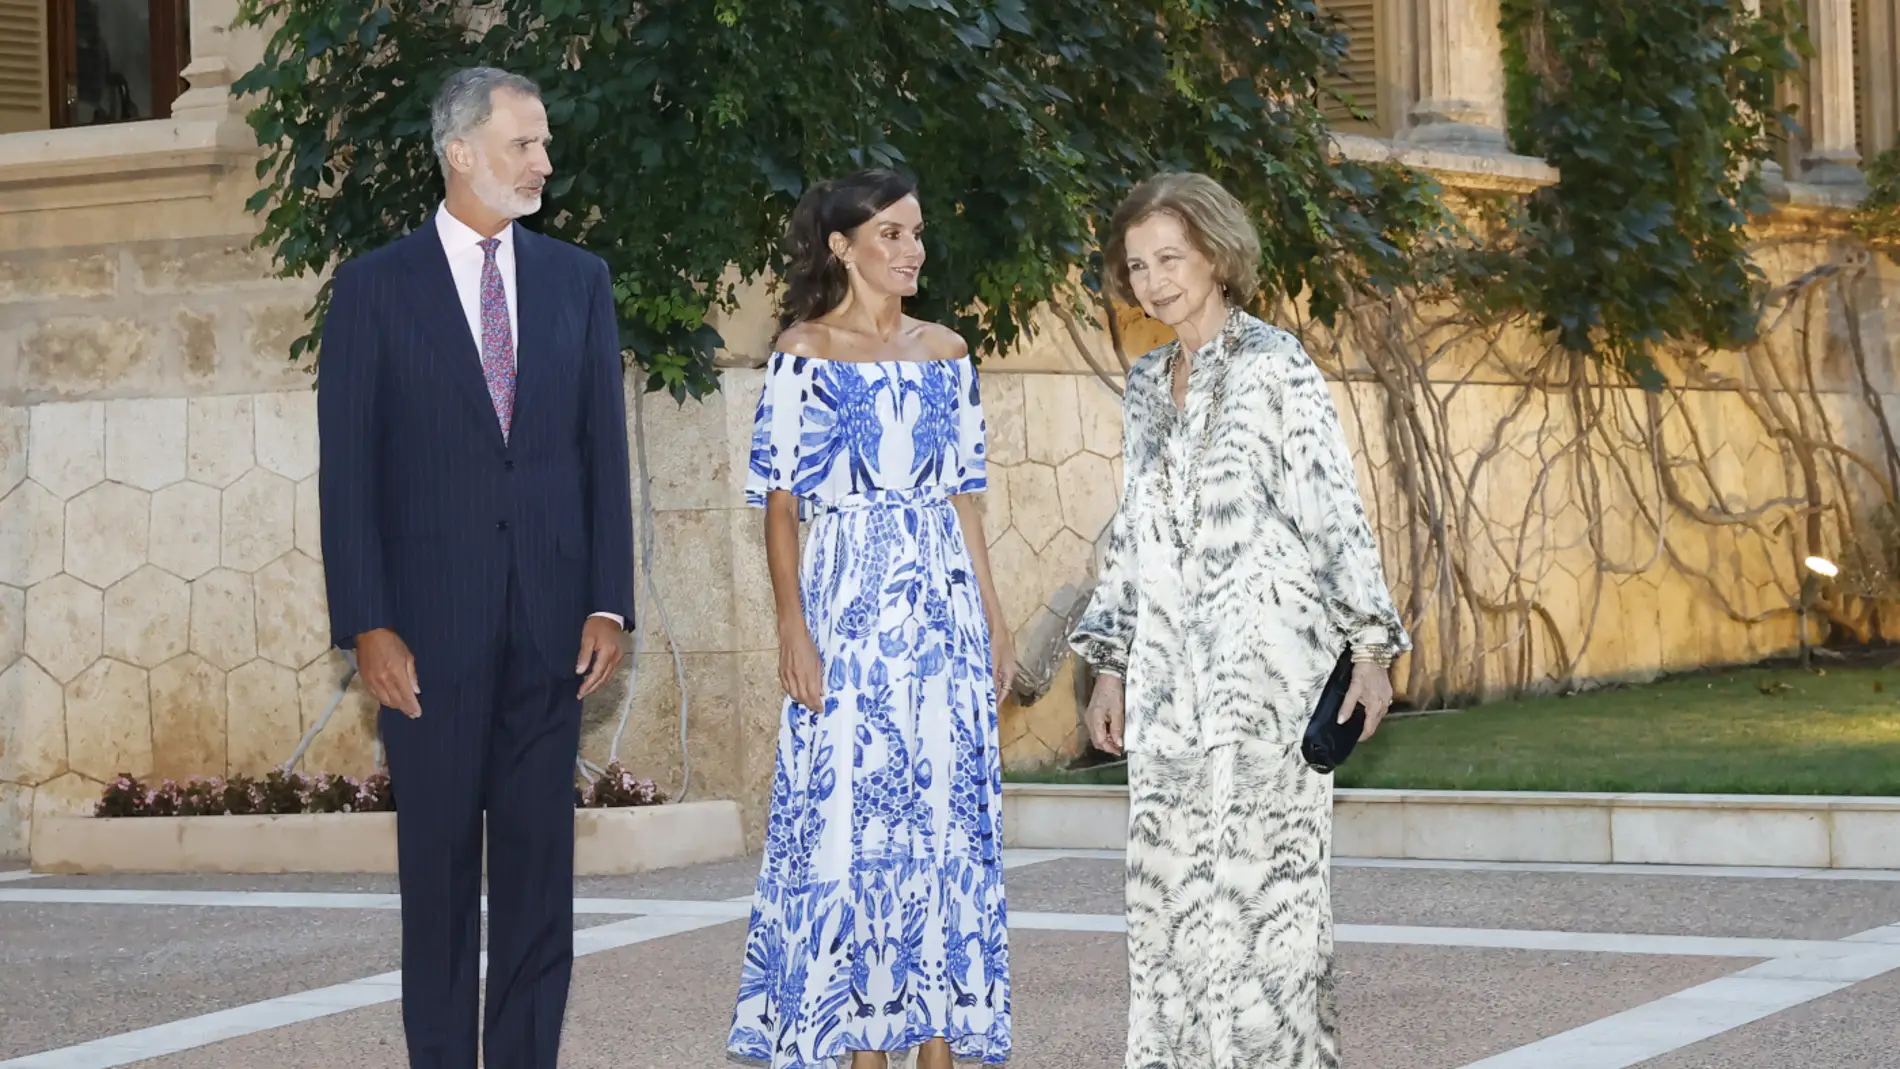 Don Felipe y Doña Letizia, en compañía de Doña Sofía, en los jardines del Palacio de Marivent durante la recepción a la sociedad civil de Baleares